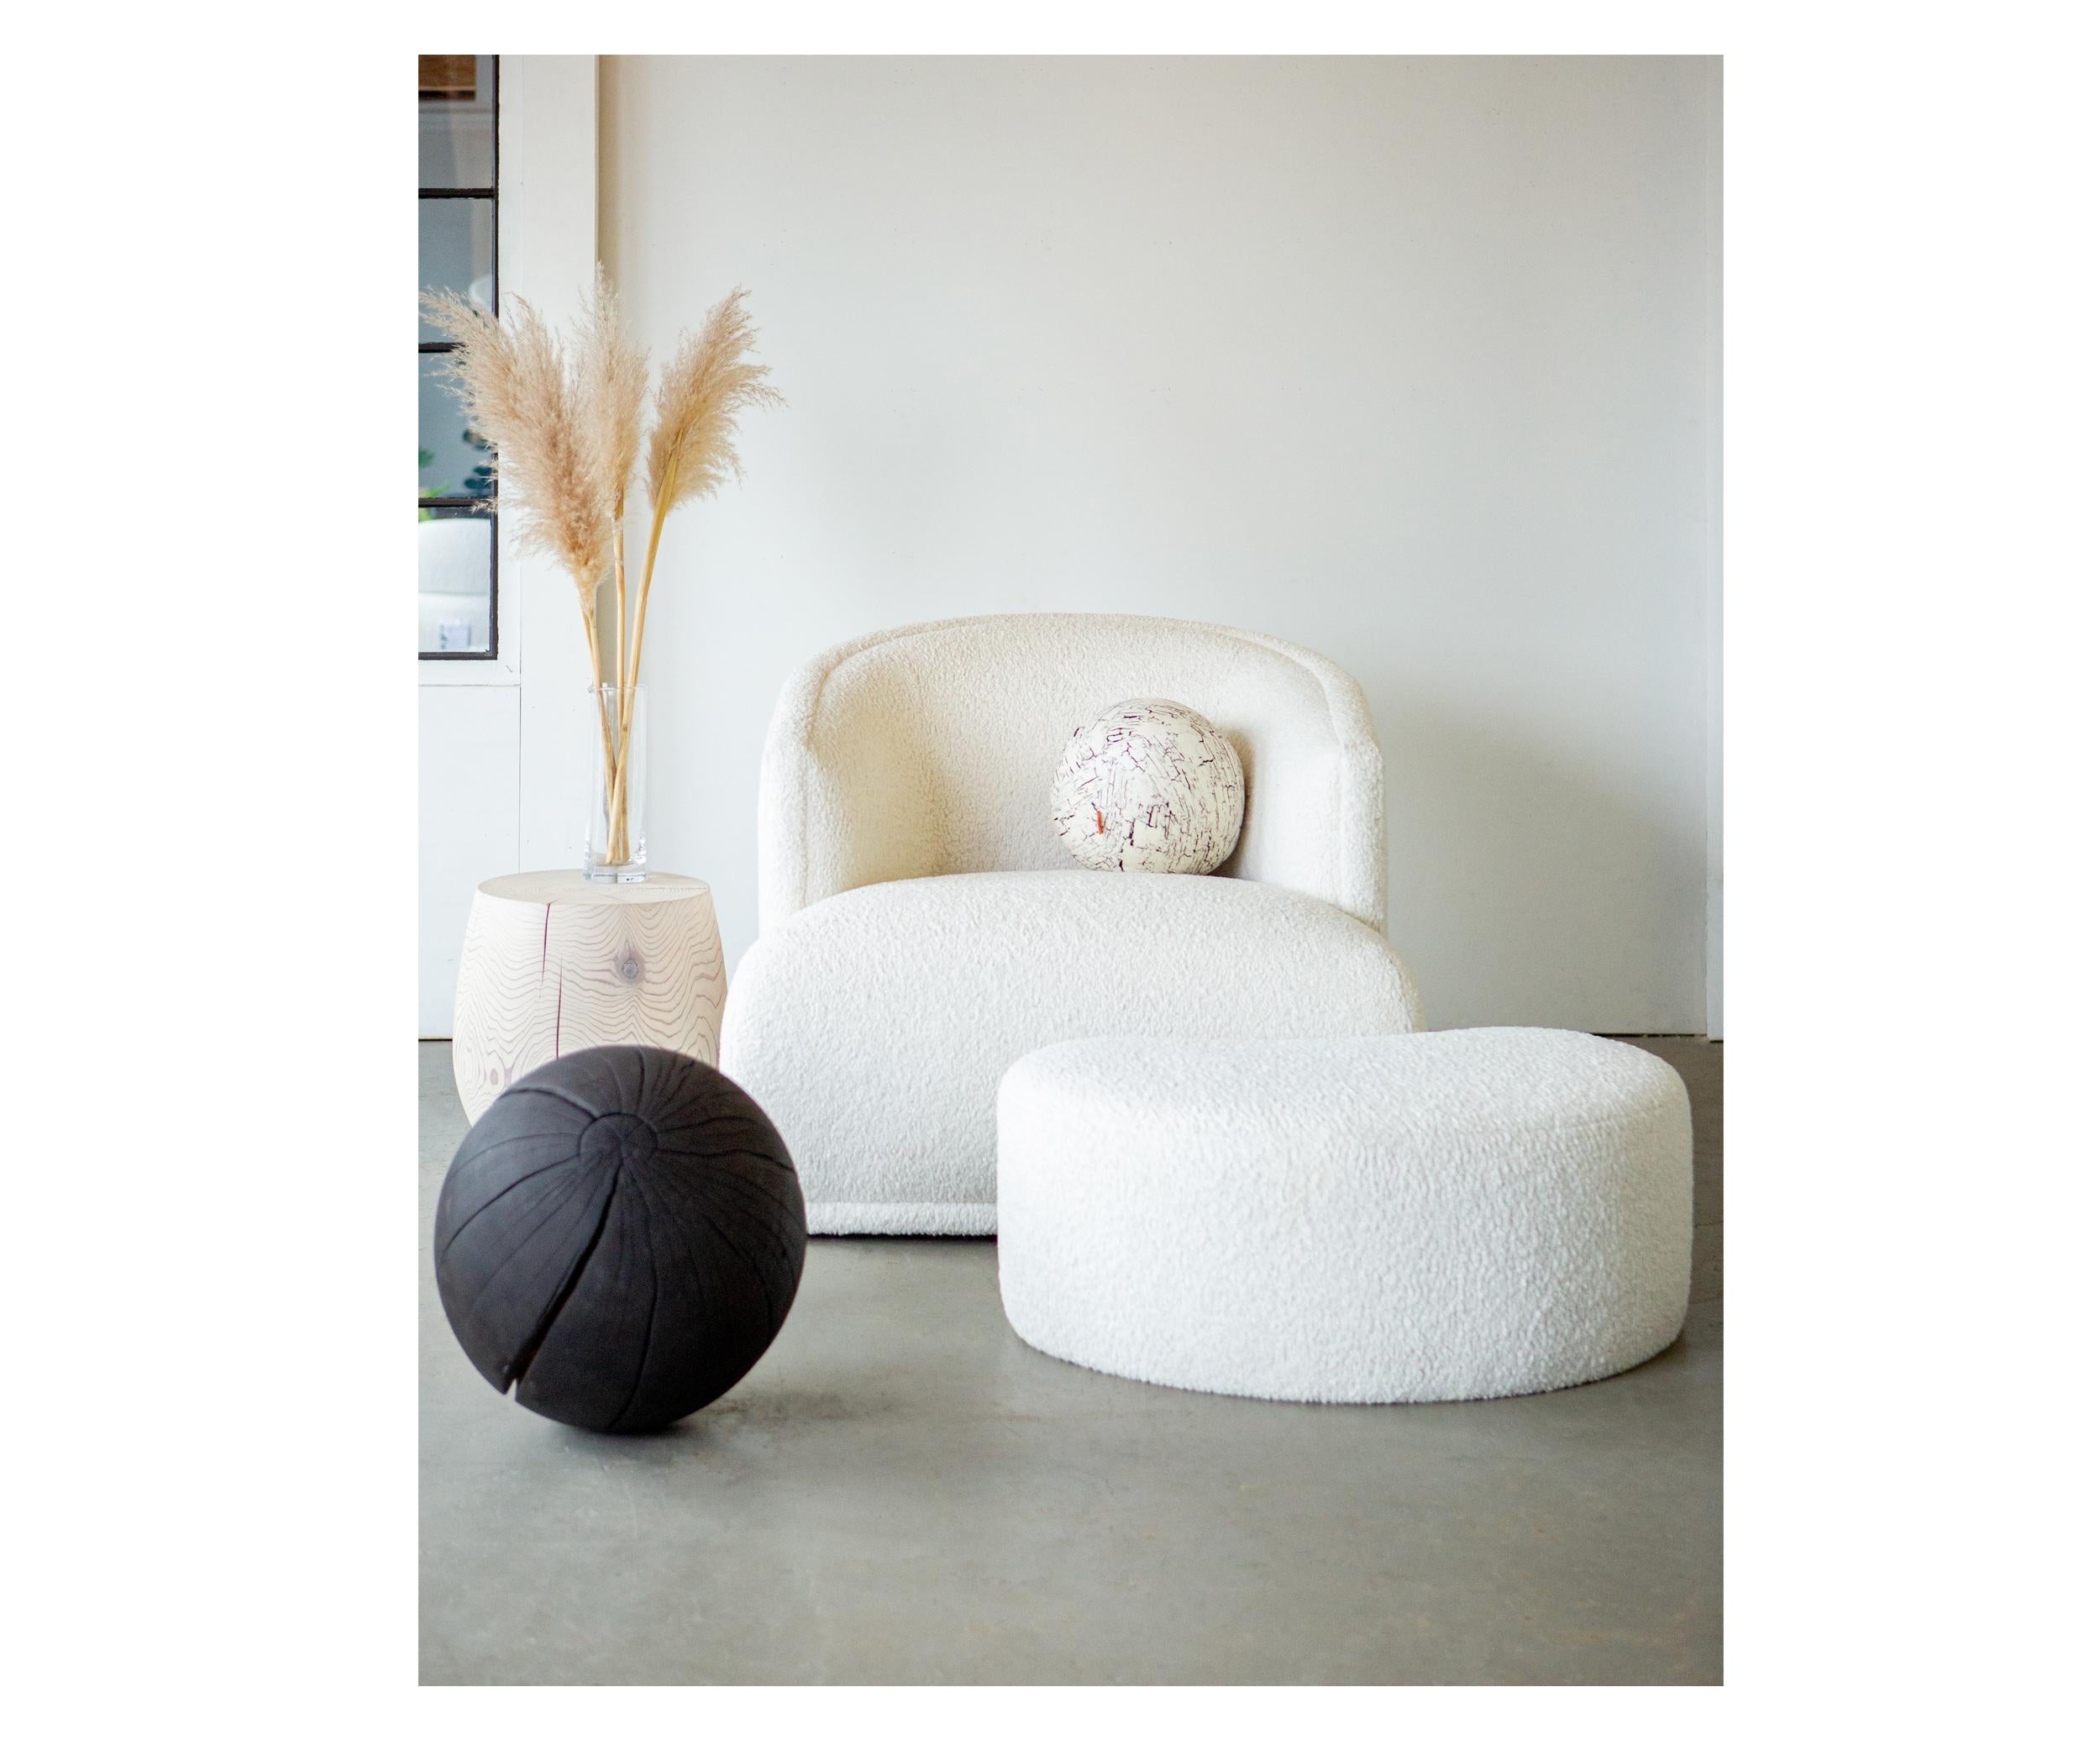 La chaise pivotante Mallos n'est pas seulement une chaise, c'est une déclaration de style et de confort. Avec un design à la fois sophistiqué et accessible, il vous invite à vous sentir chez vous. Les courbes douces bercent votre corps, offrant un